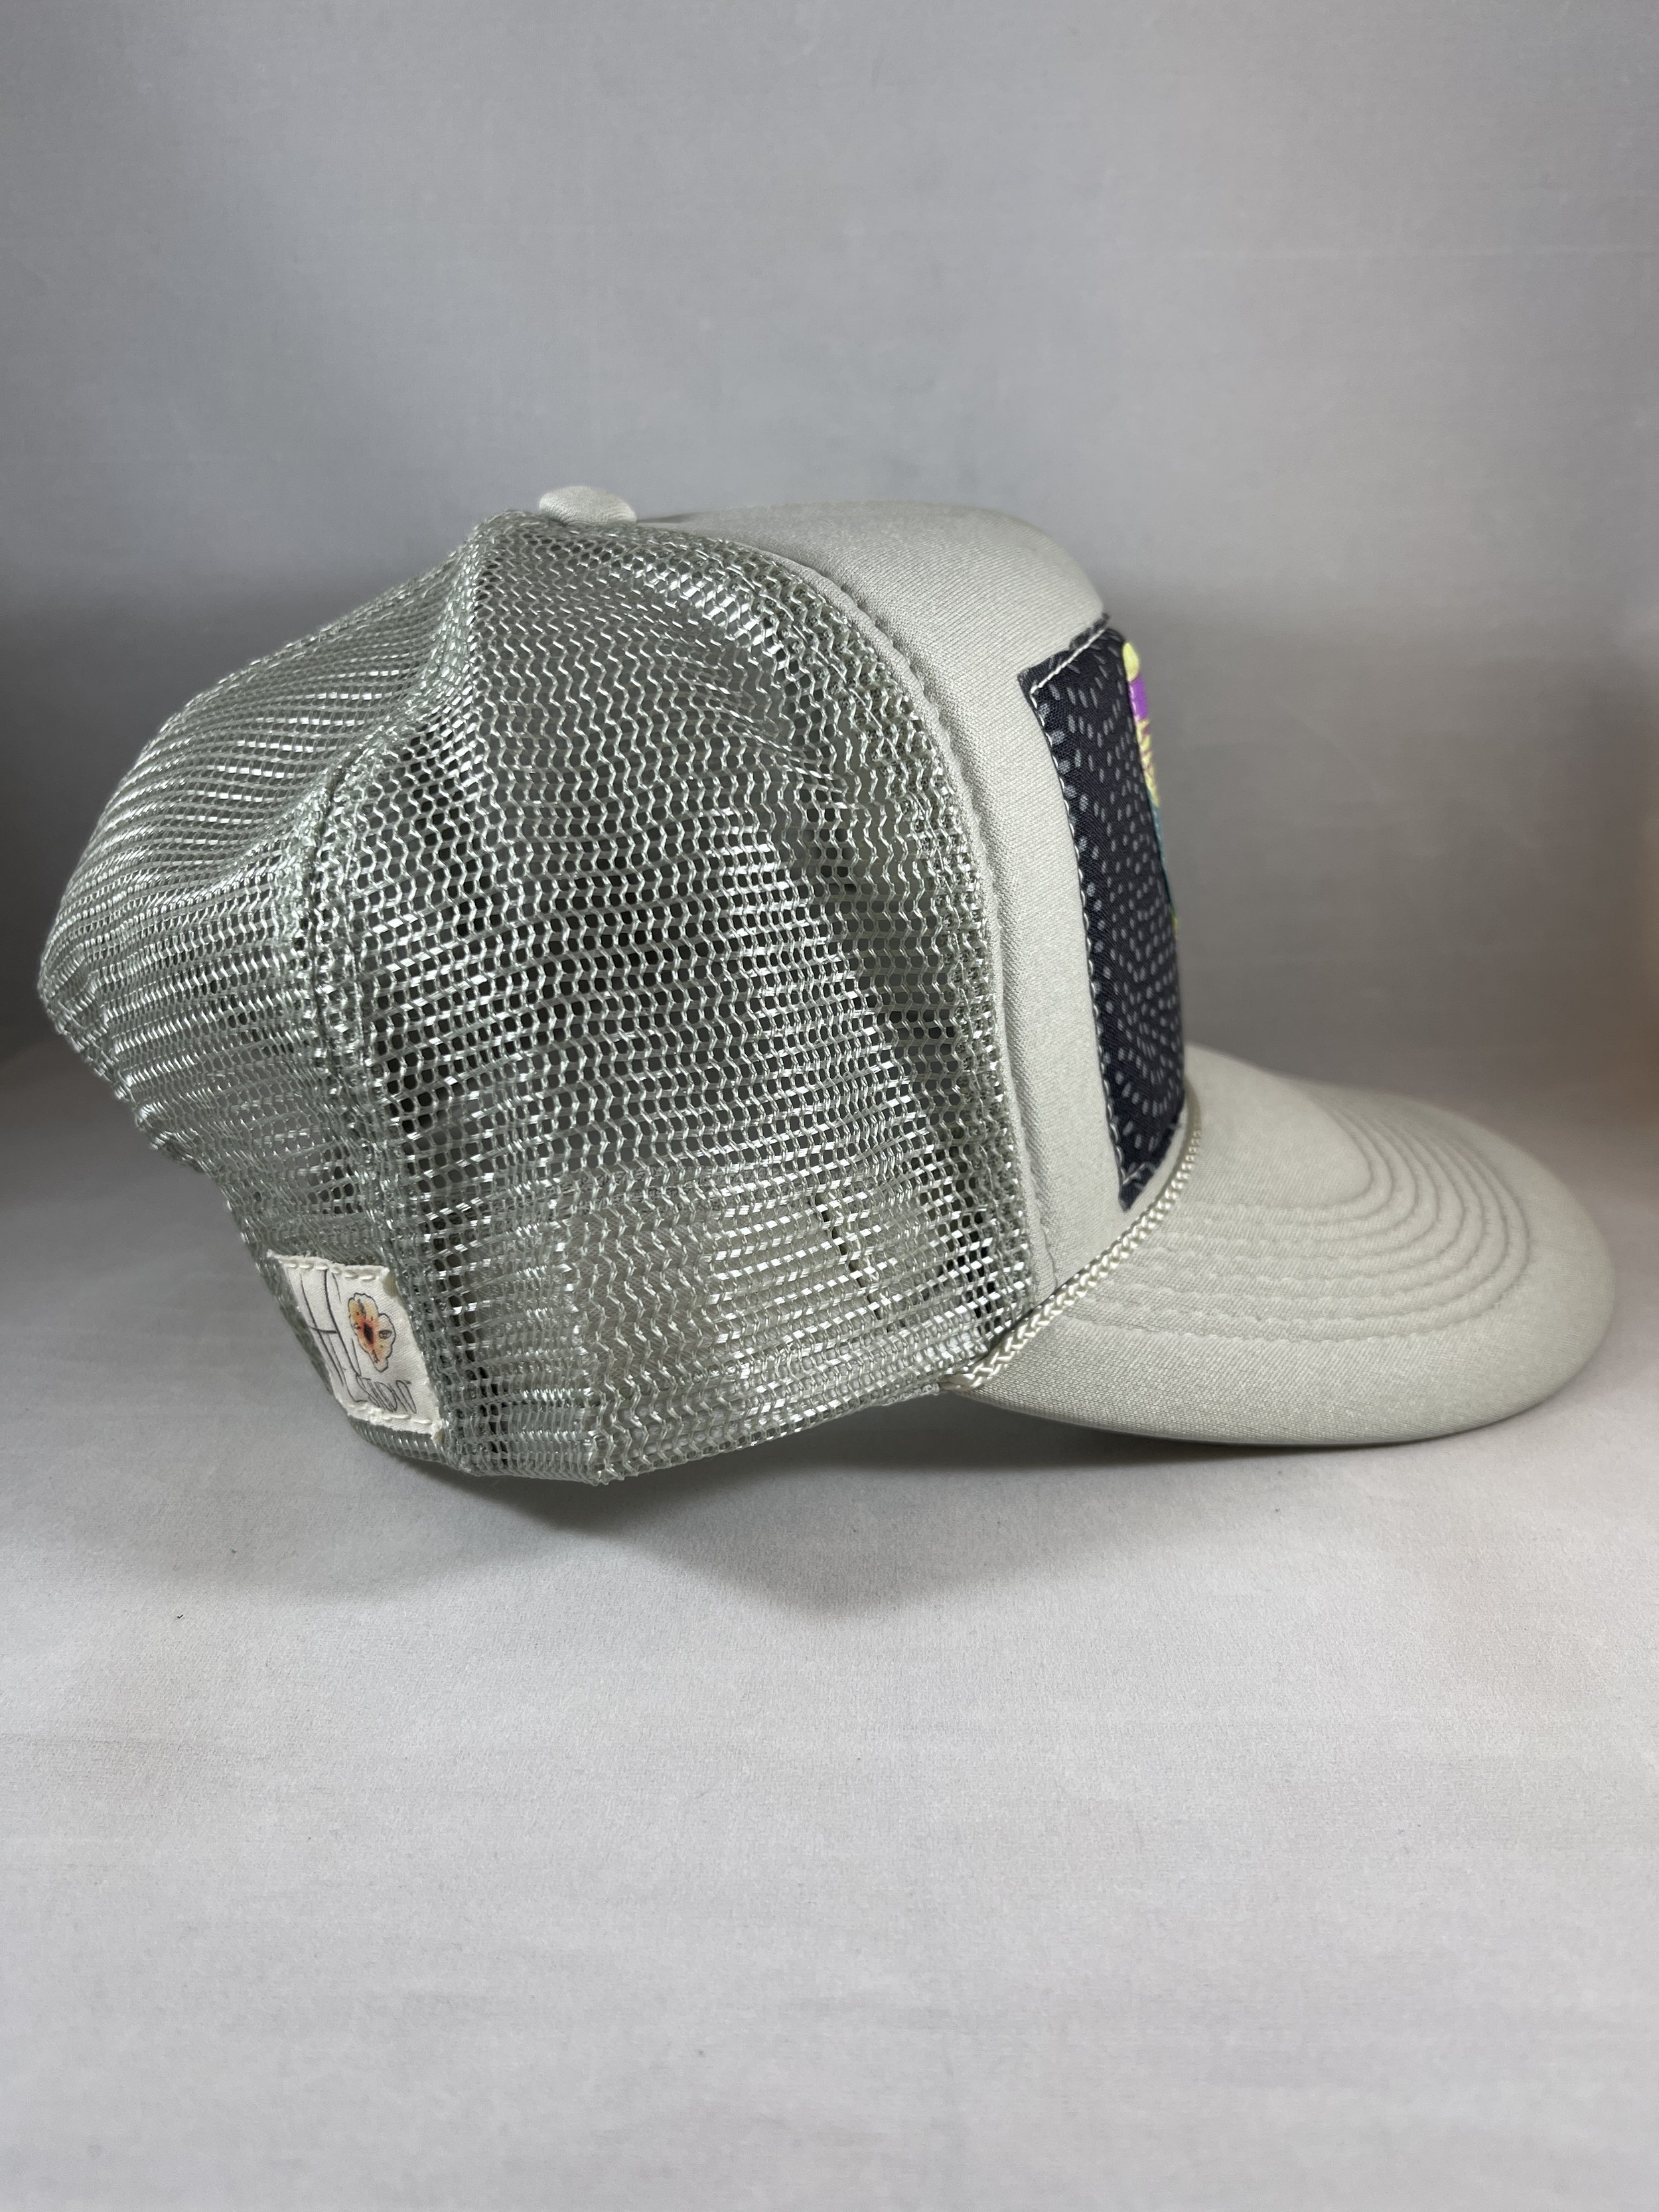 Shop — HEC Studio - One-of-a-kind Hats